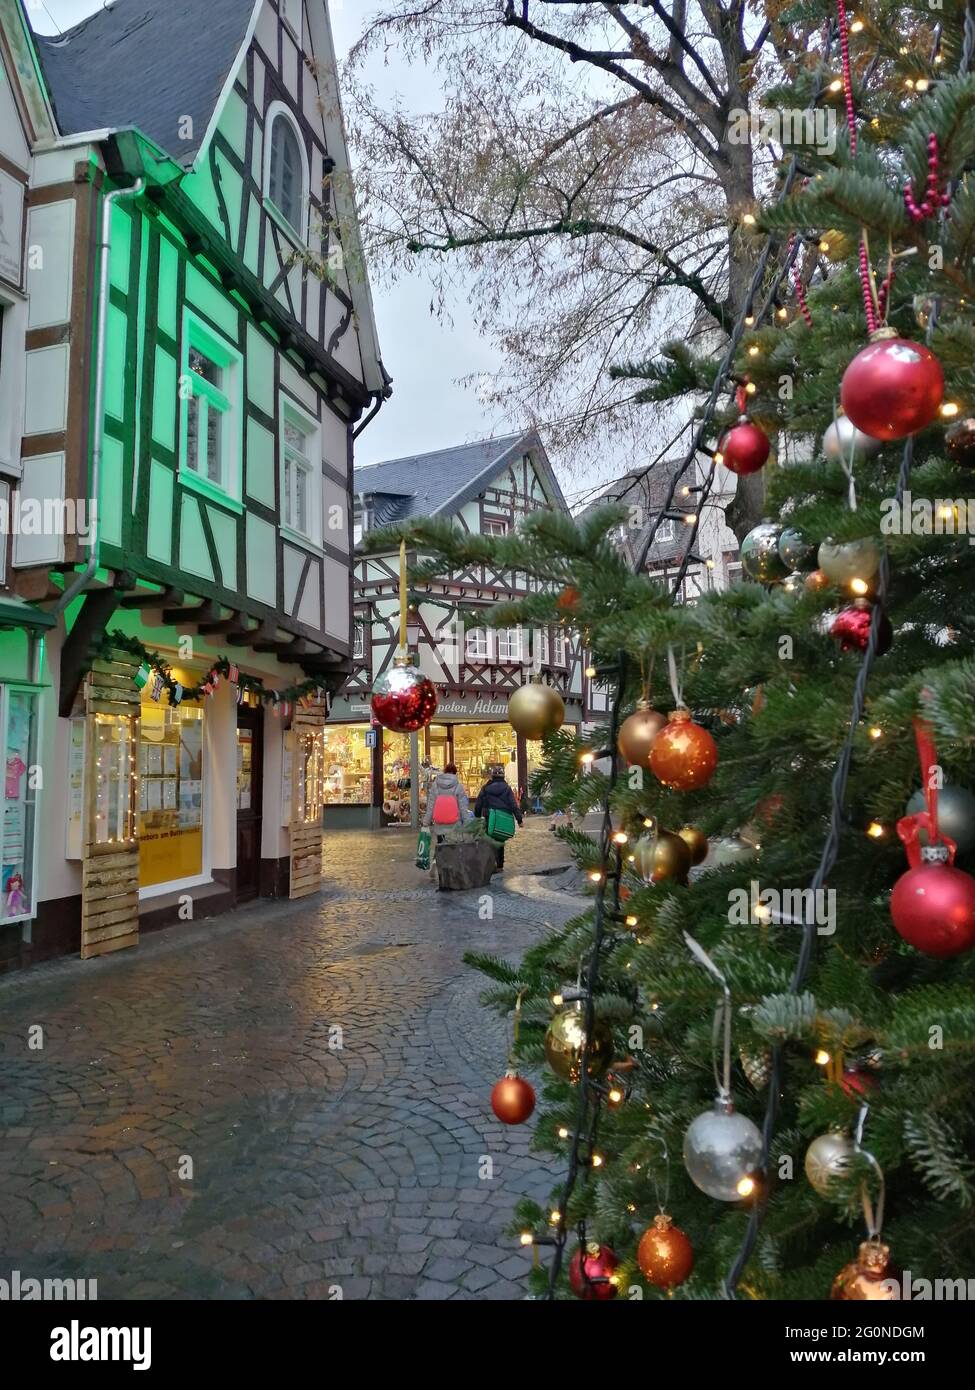 Un albero di natale splendidamente decorato e l'illuminazione nella città vecchia della città tedesca Linz am Rhein. Linz am Rhein im Weihnachtsglanz. Foto Stock